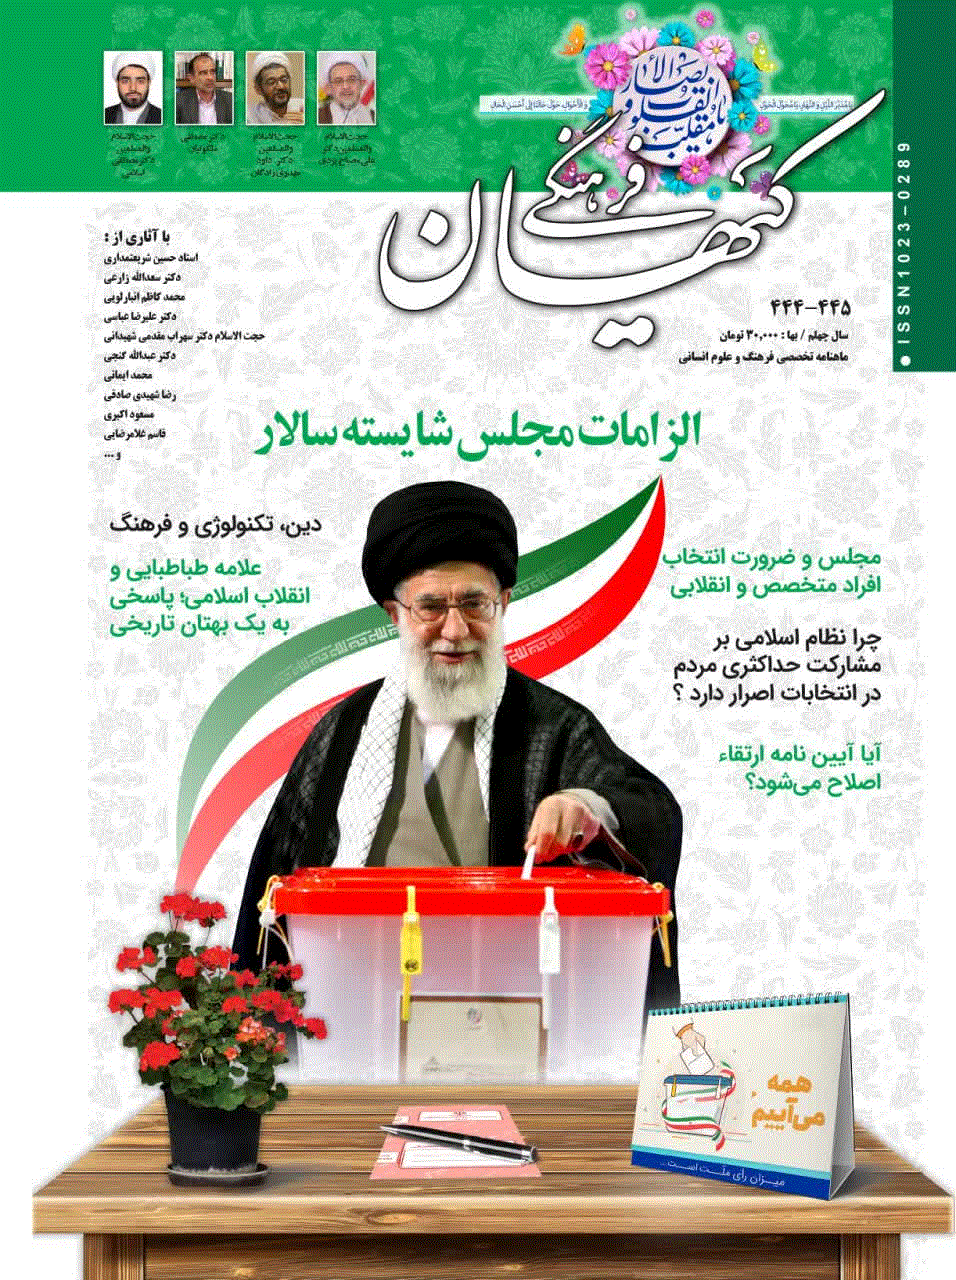 کیهان فرهنگی - خرداد 1364 - شماره 15